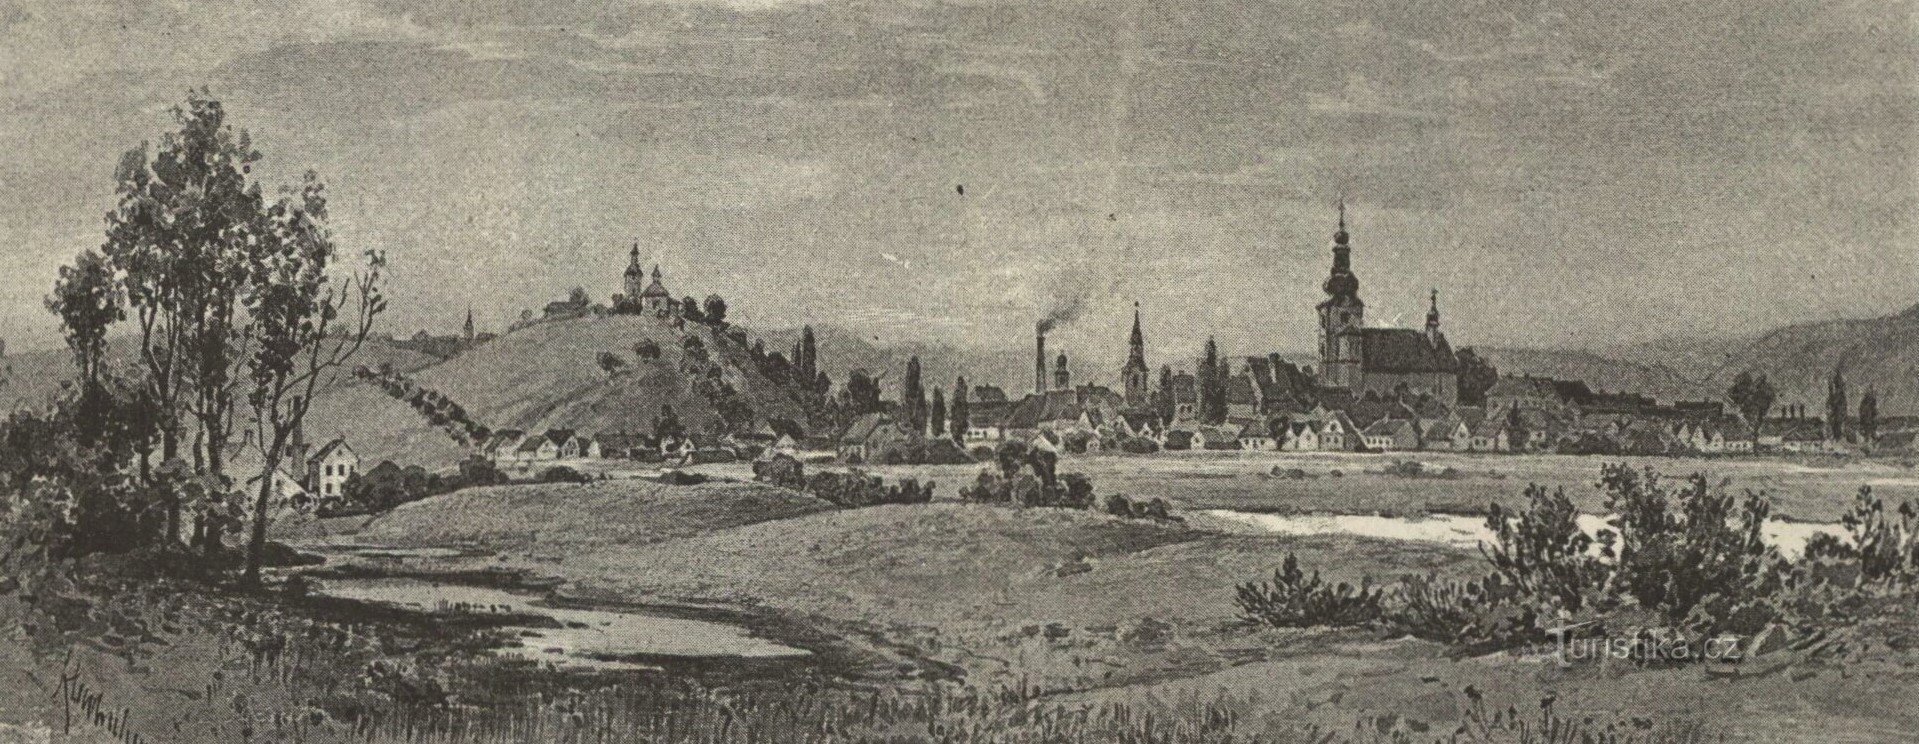 Třebechovice pod Oreb egy 19. század végi rajzon